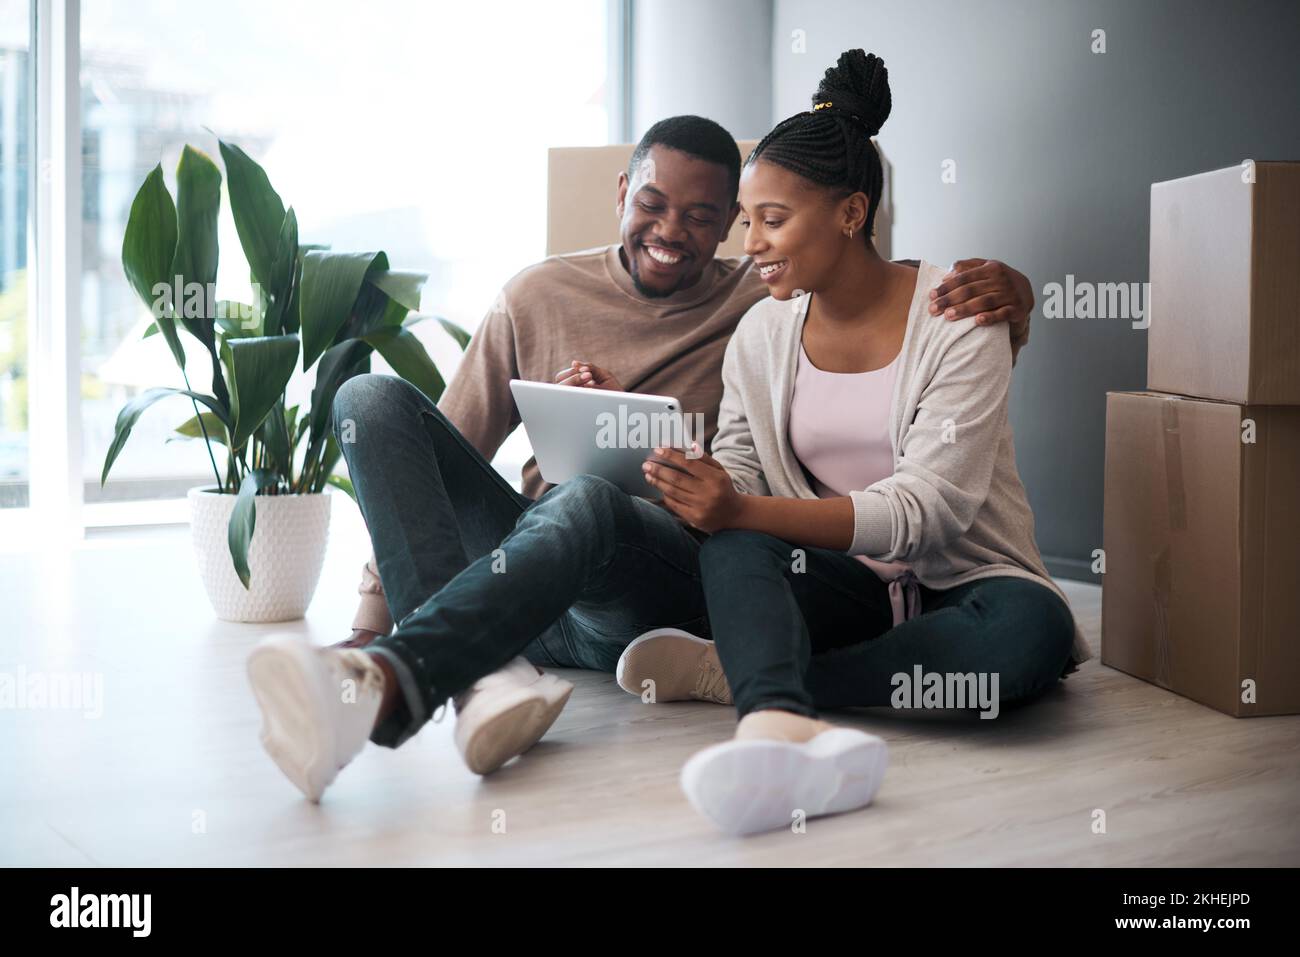 Afrikanisches Paar, Immobilien und Tablet für neue Hauseinkäufe, Anlage oder relaxen auf dem Boden mit Boxen. Makler, frohe Online-Kommunikation und Stockfoto